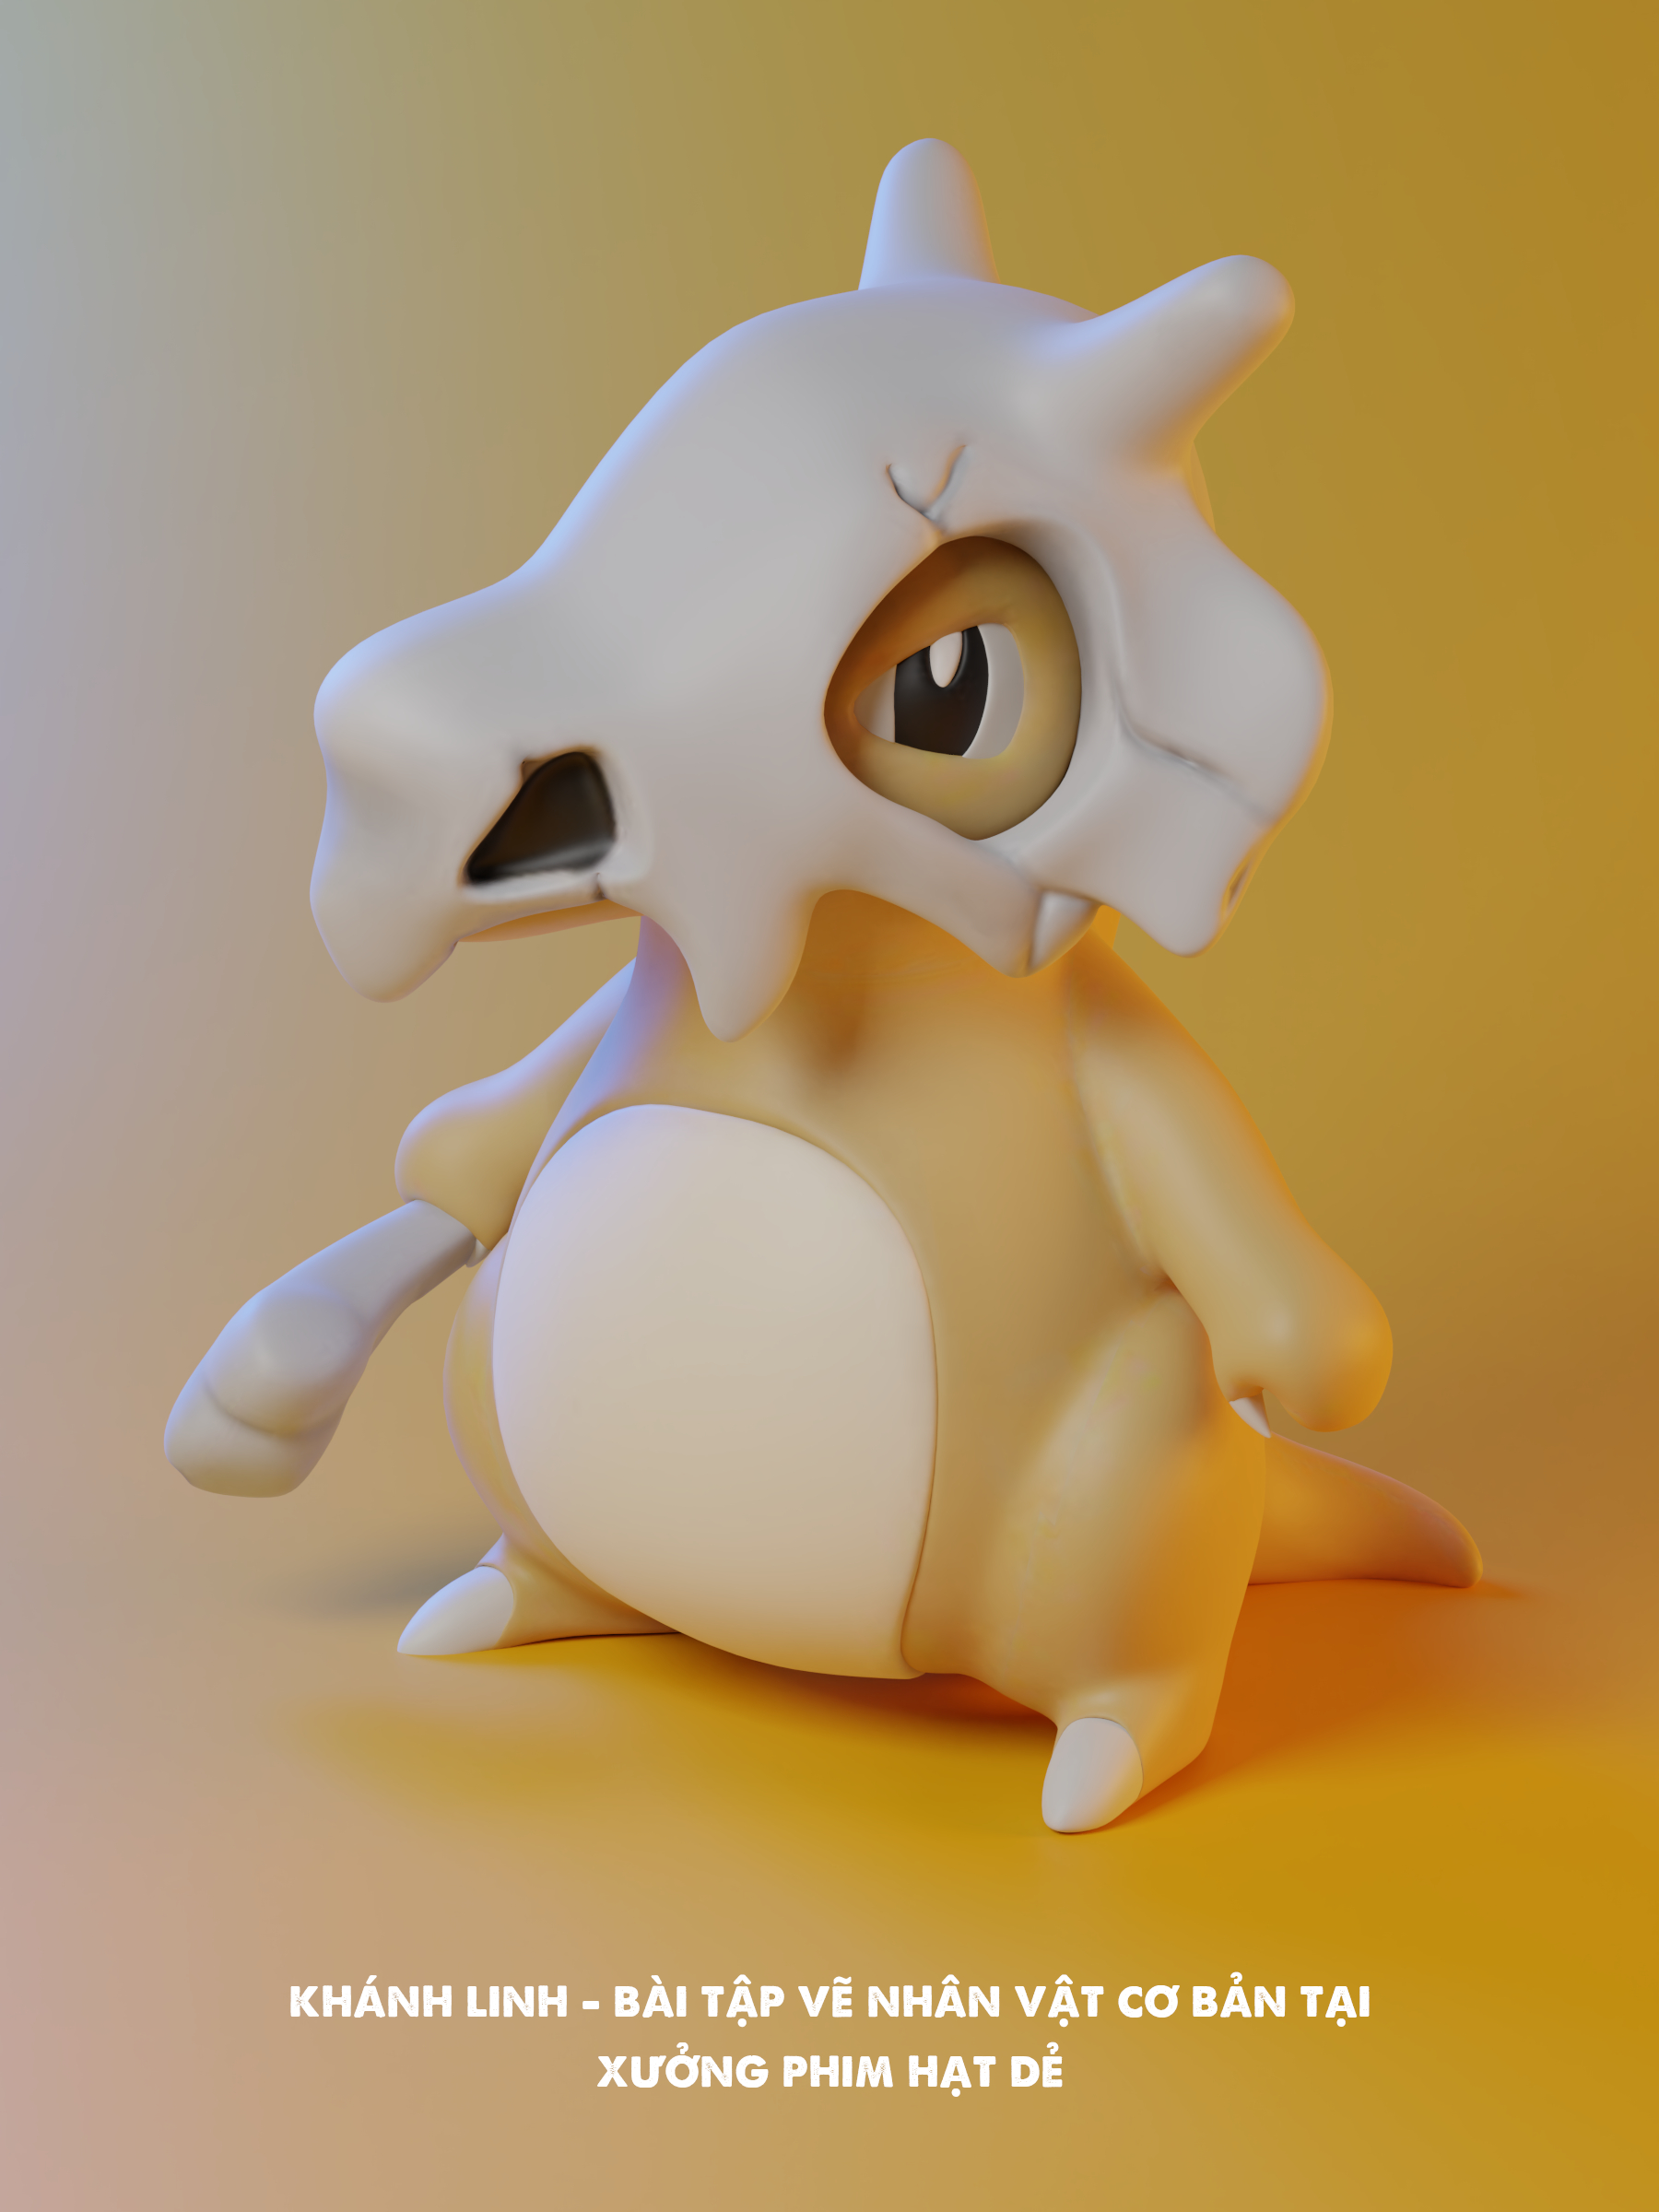 Cubone Pokémon - Blender: Đã bao giờ bạn tưởng tượng tạo ra một con Cubone đẹp mắt chưa? Hãy xem video này để tôi hướng dẫn bạn cách tạo ra một con Cubone thật kỳ diệu bằng công cụ Blender. Bạn sẽ rất ngạc nhiên về những gì bạn có thể làm được!